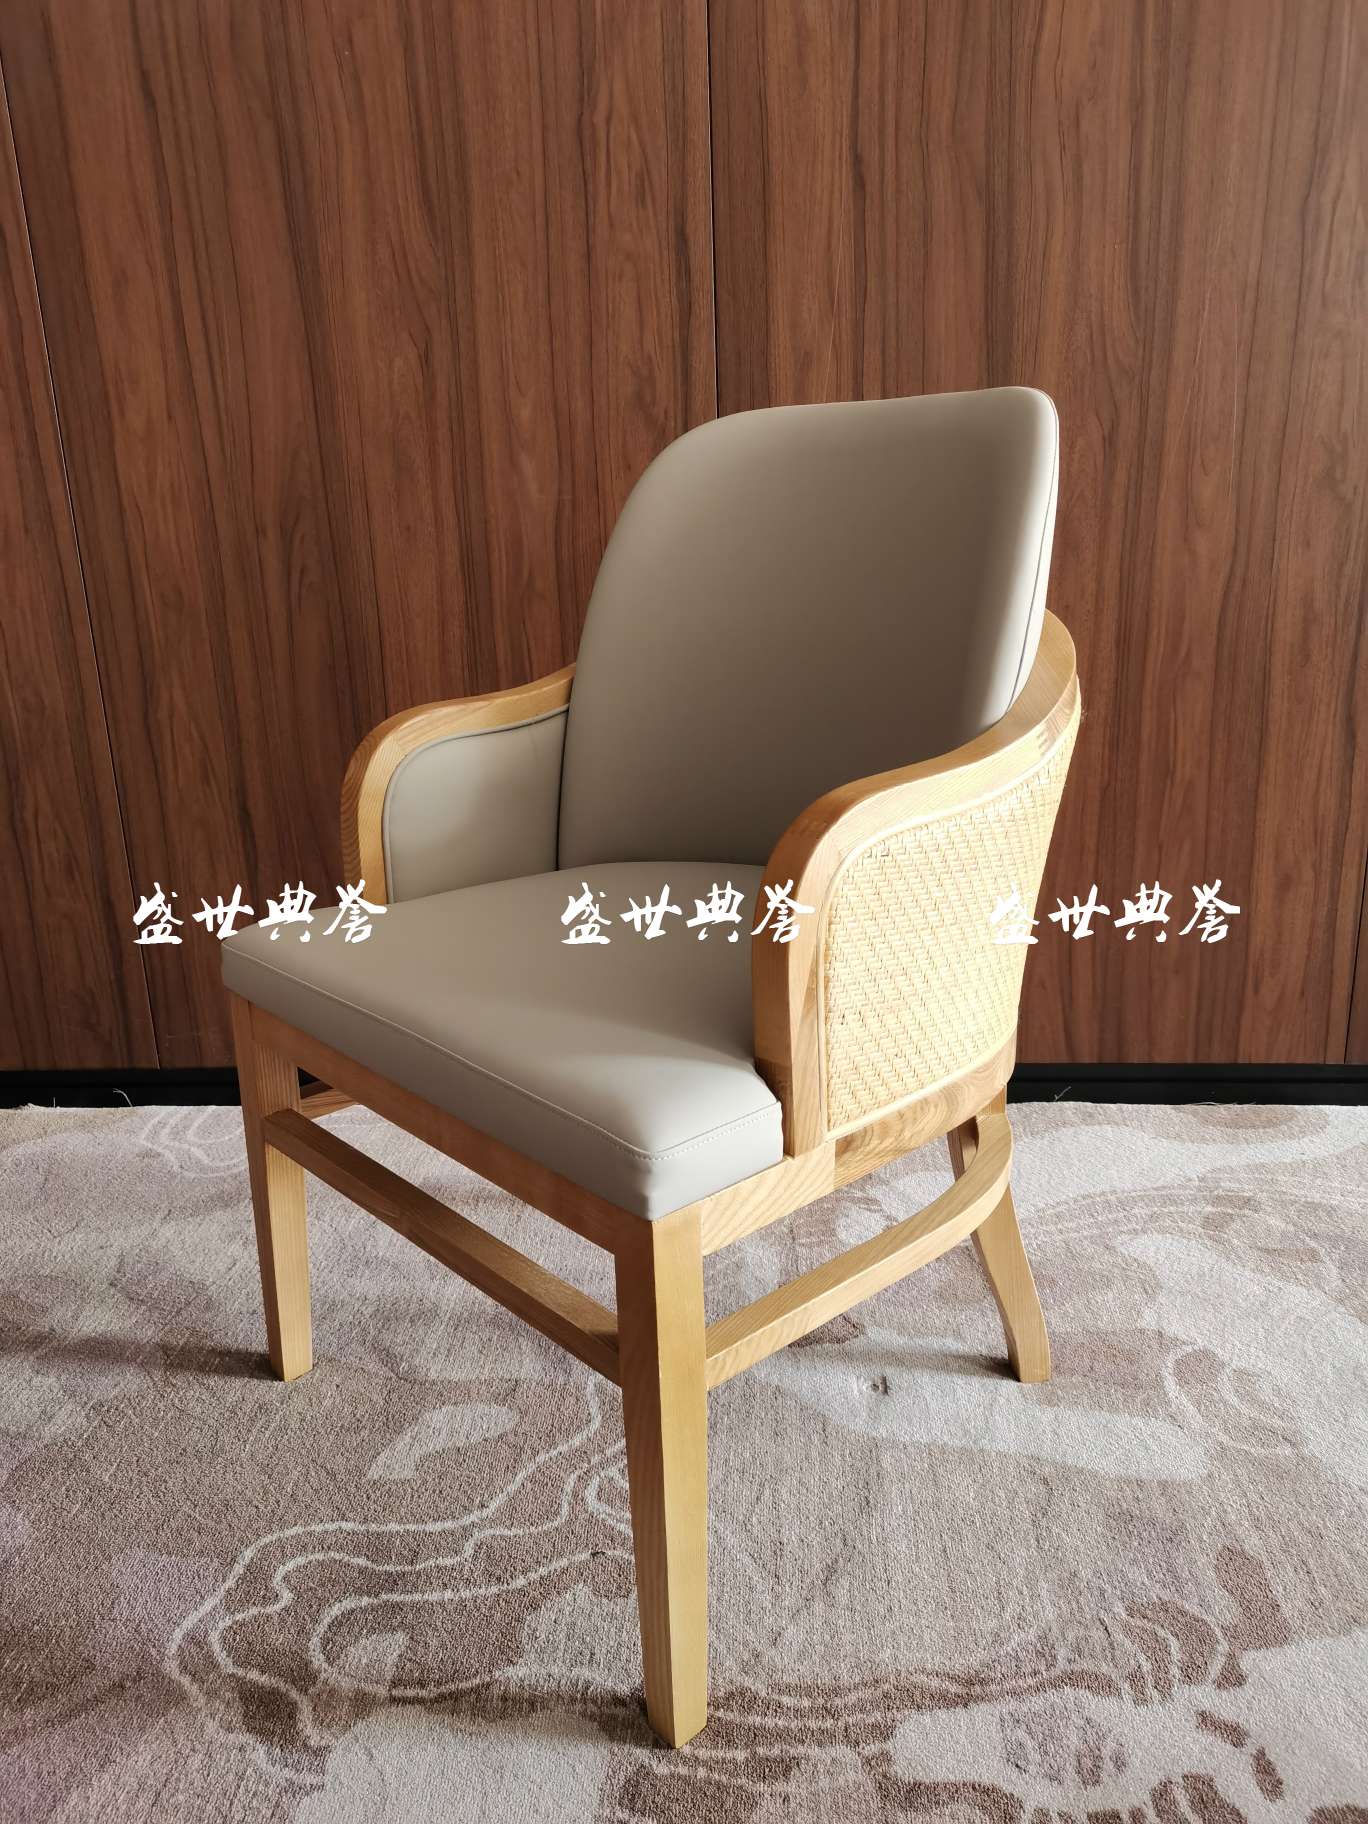 上海星级酒店实木餐桌椅国际大饭店包厢实木藤编椅子白蜡木扶手藤椅详情图2